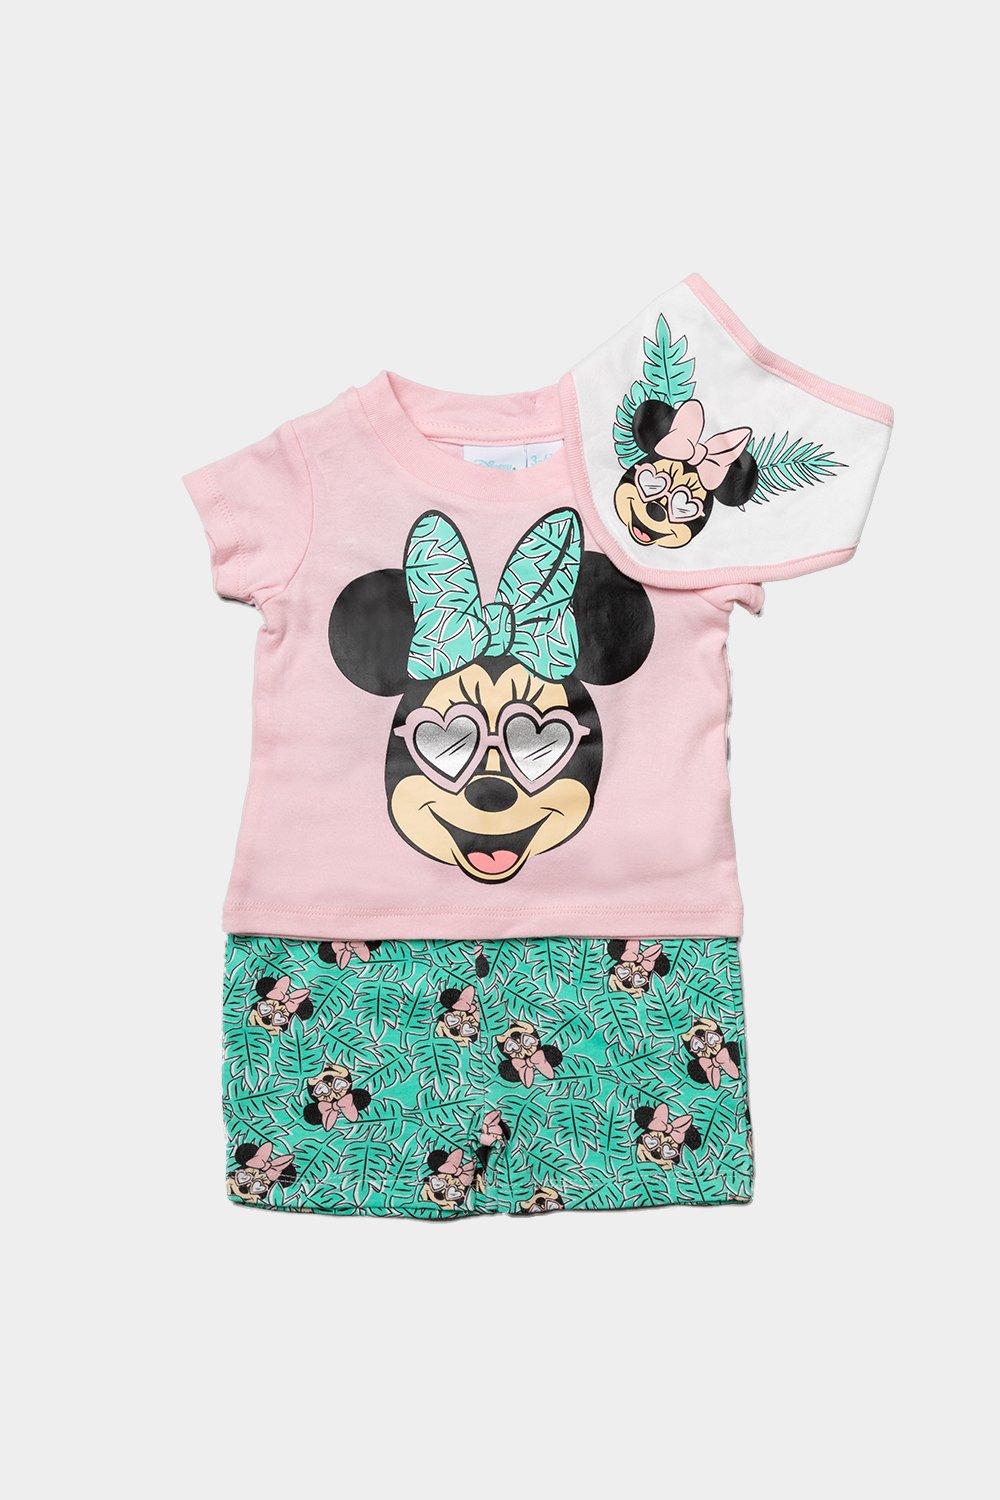 Тропический костюм из трех предметов Минни Маус Disney Baby, розовый пакет ламинат горизонтальный minnie mouse минни маус 31х40х11 см